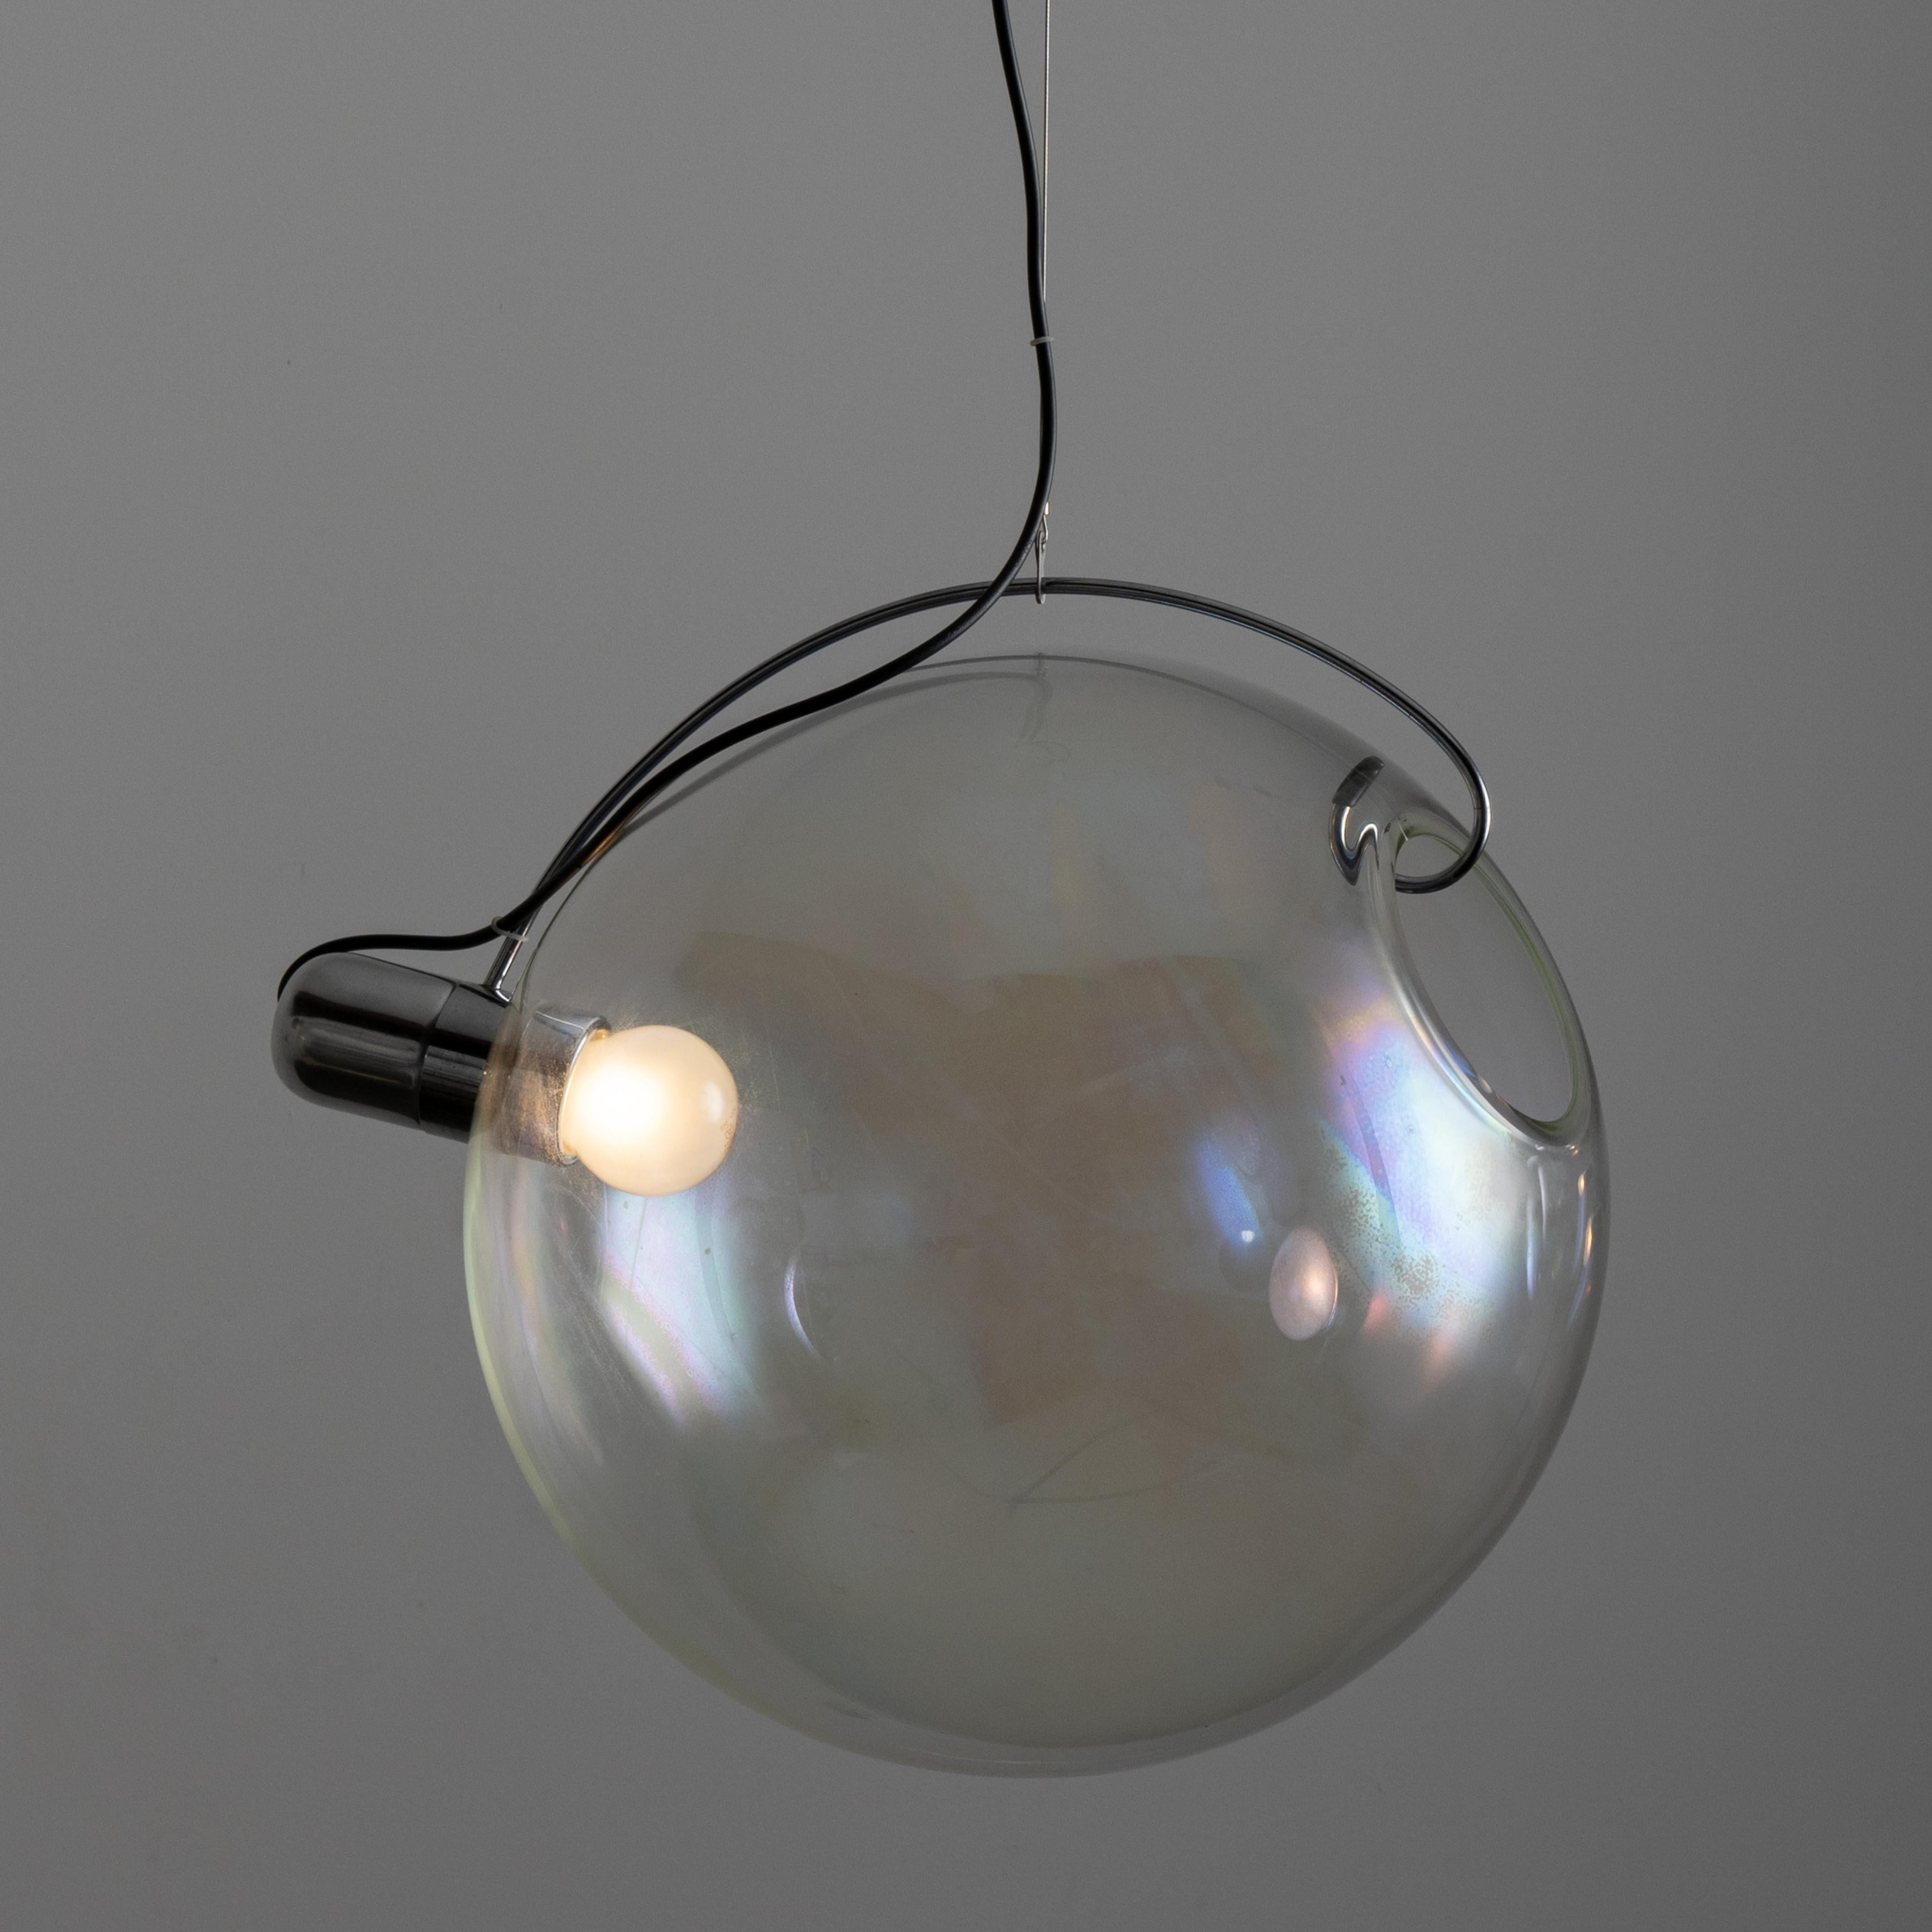 Lampes suspendues 'Sona' par Carlo Nason pour Lumenform. Conçue et fabriquée en Italie, en 1973. Ces pendentifs se composent de globes iridescents visuellement frappants et d'un système de suspension minimal. Les deux globes en verre ont une